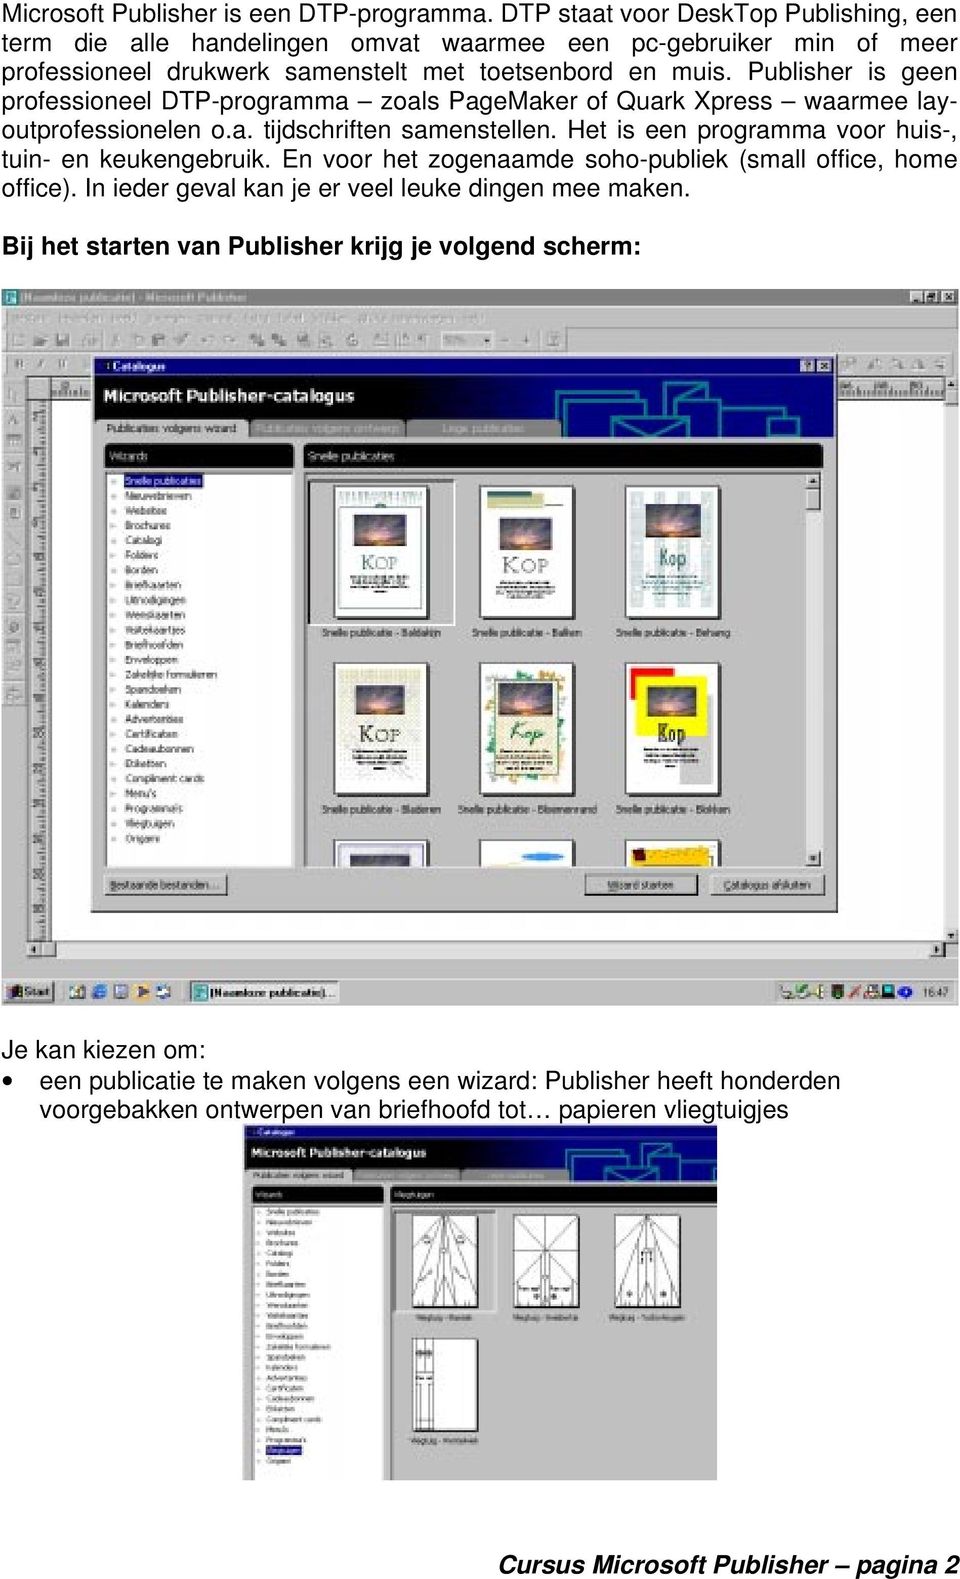 Publisher is geen professioneel DTP-programma zoals PageMaker of Quark Xpress waarmee layoutprofessionelen o.a. tijdschriften samenstellen.